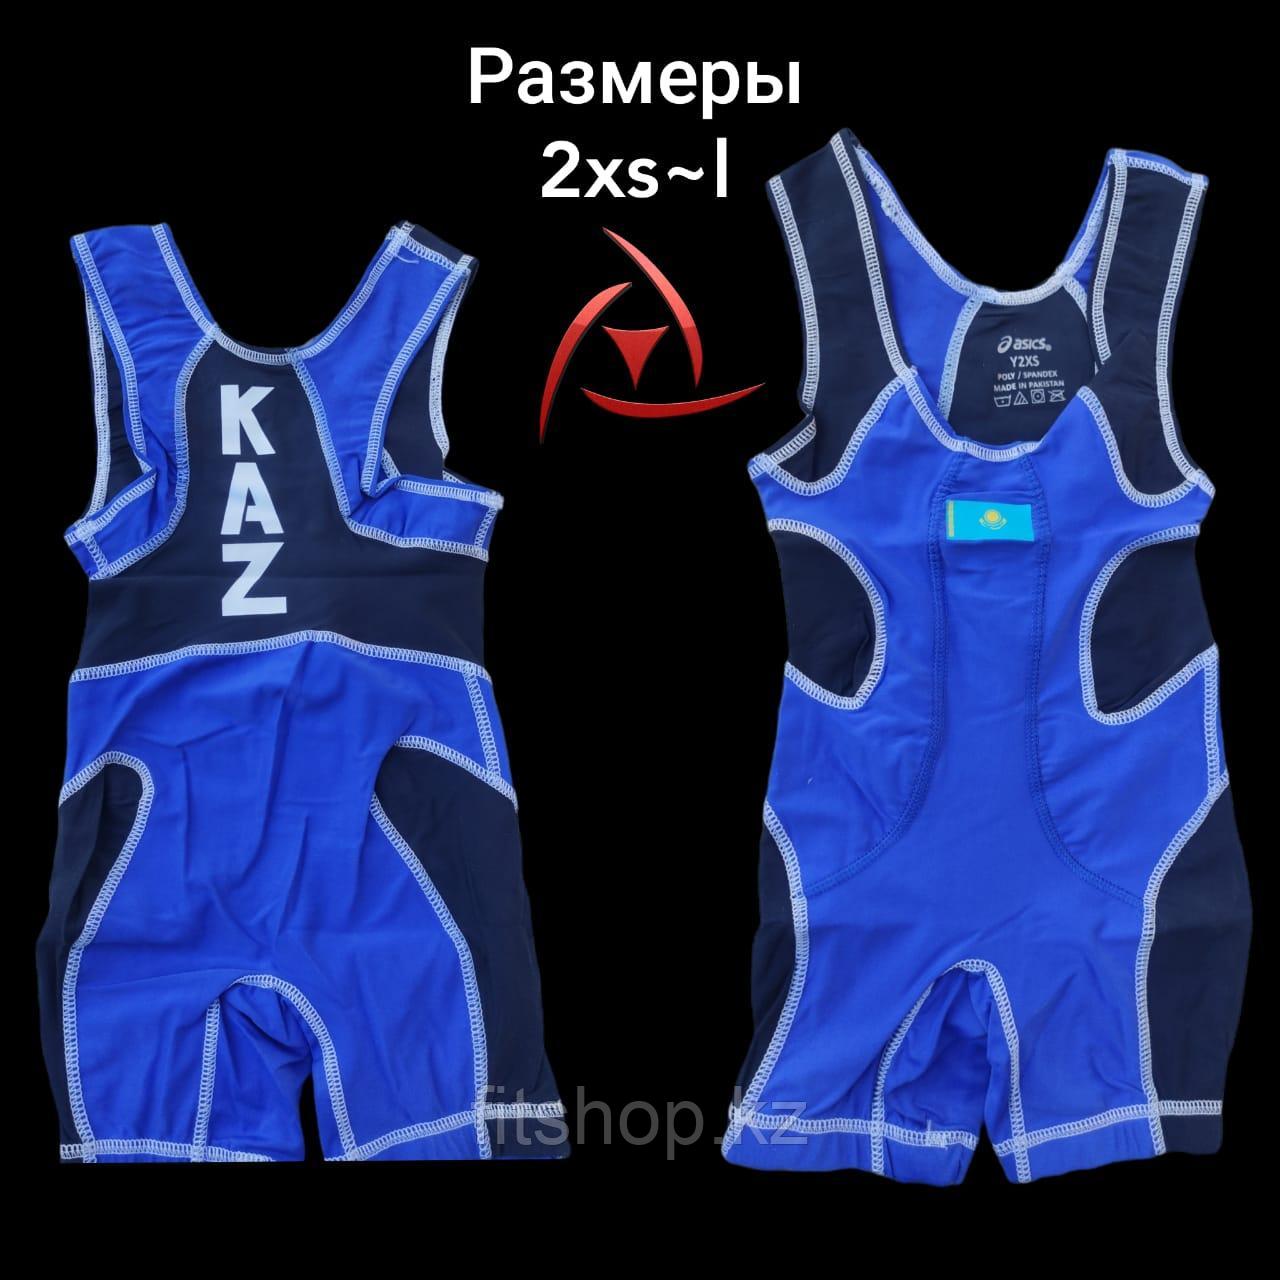 Трико борцовское для вольной и греко-римской борьбы, тяжело атлетическое  Казахстан (красное ,синее)